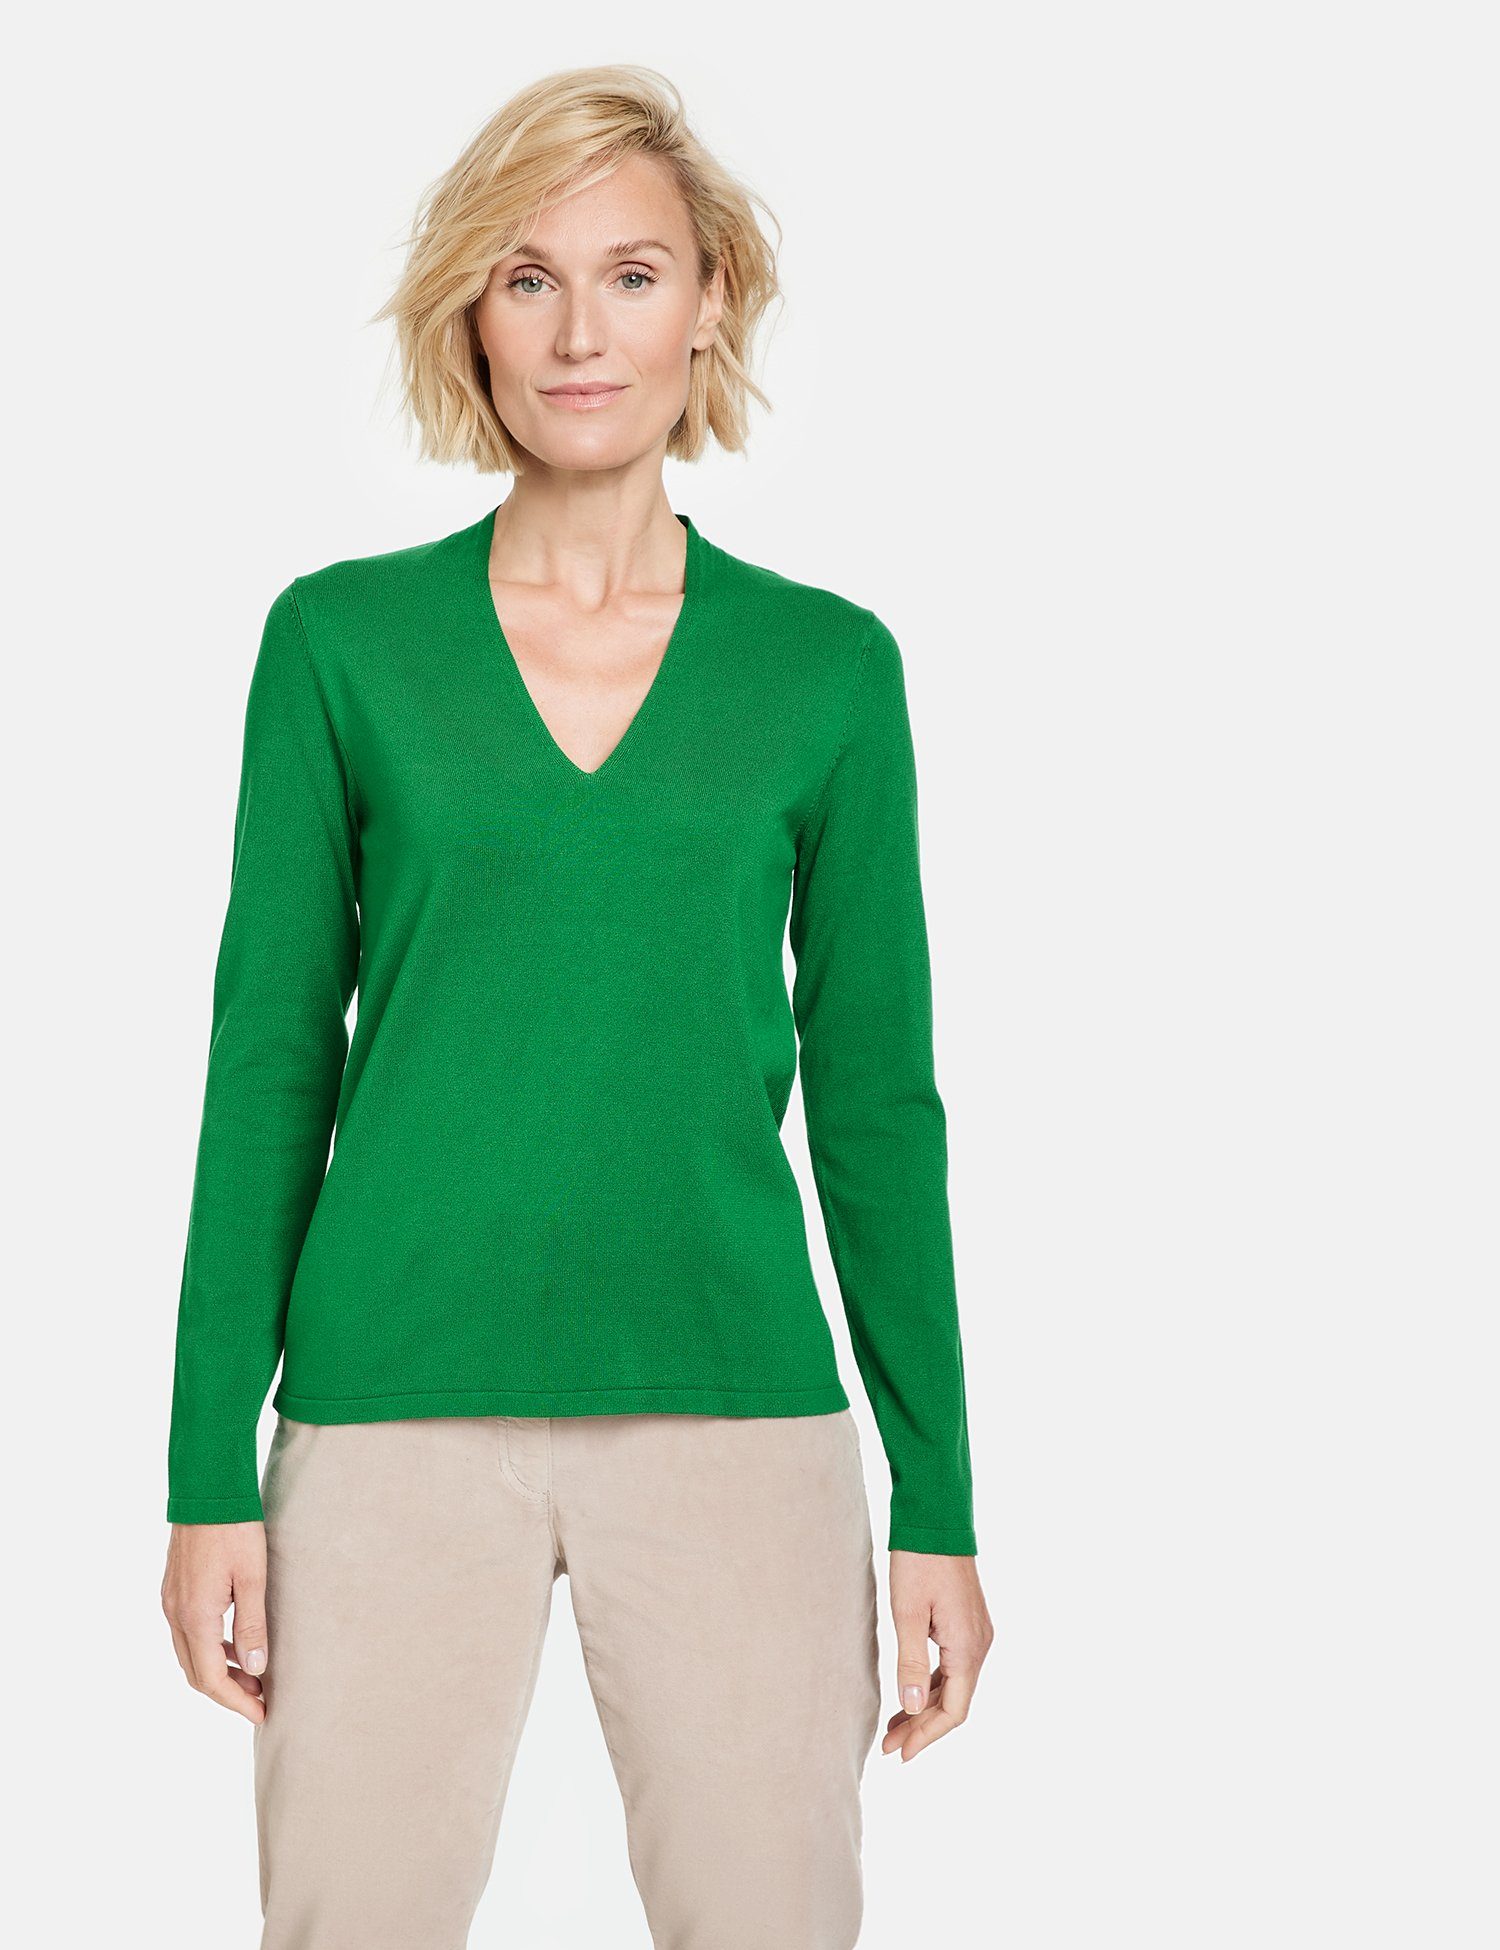 Beliebte Neuheiten GERRY WEBER Green Rundhalspullover Pullover mit Bright Feinstrick V-Ausschnitt aus